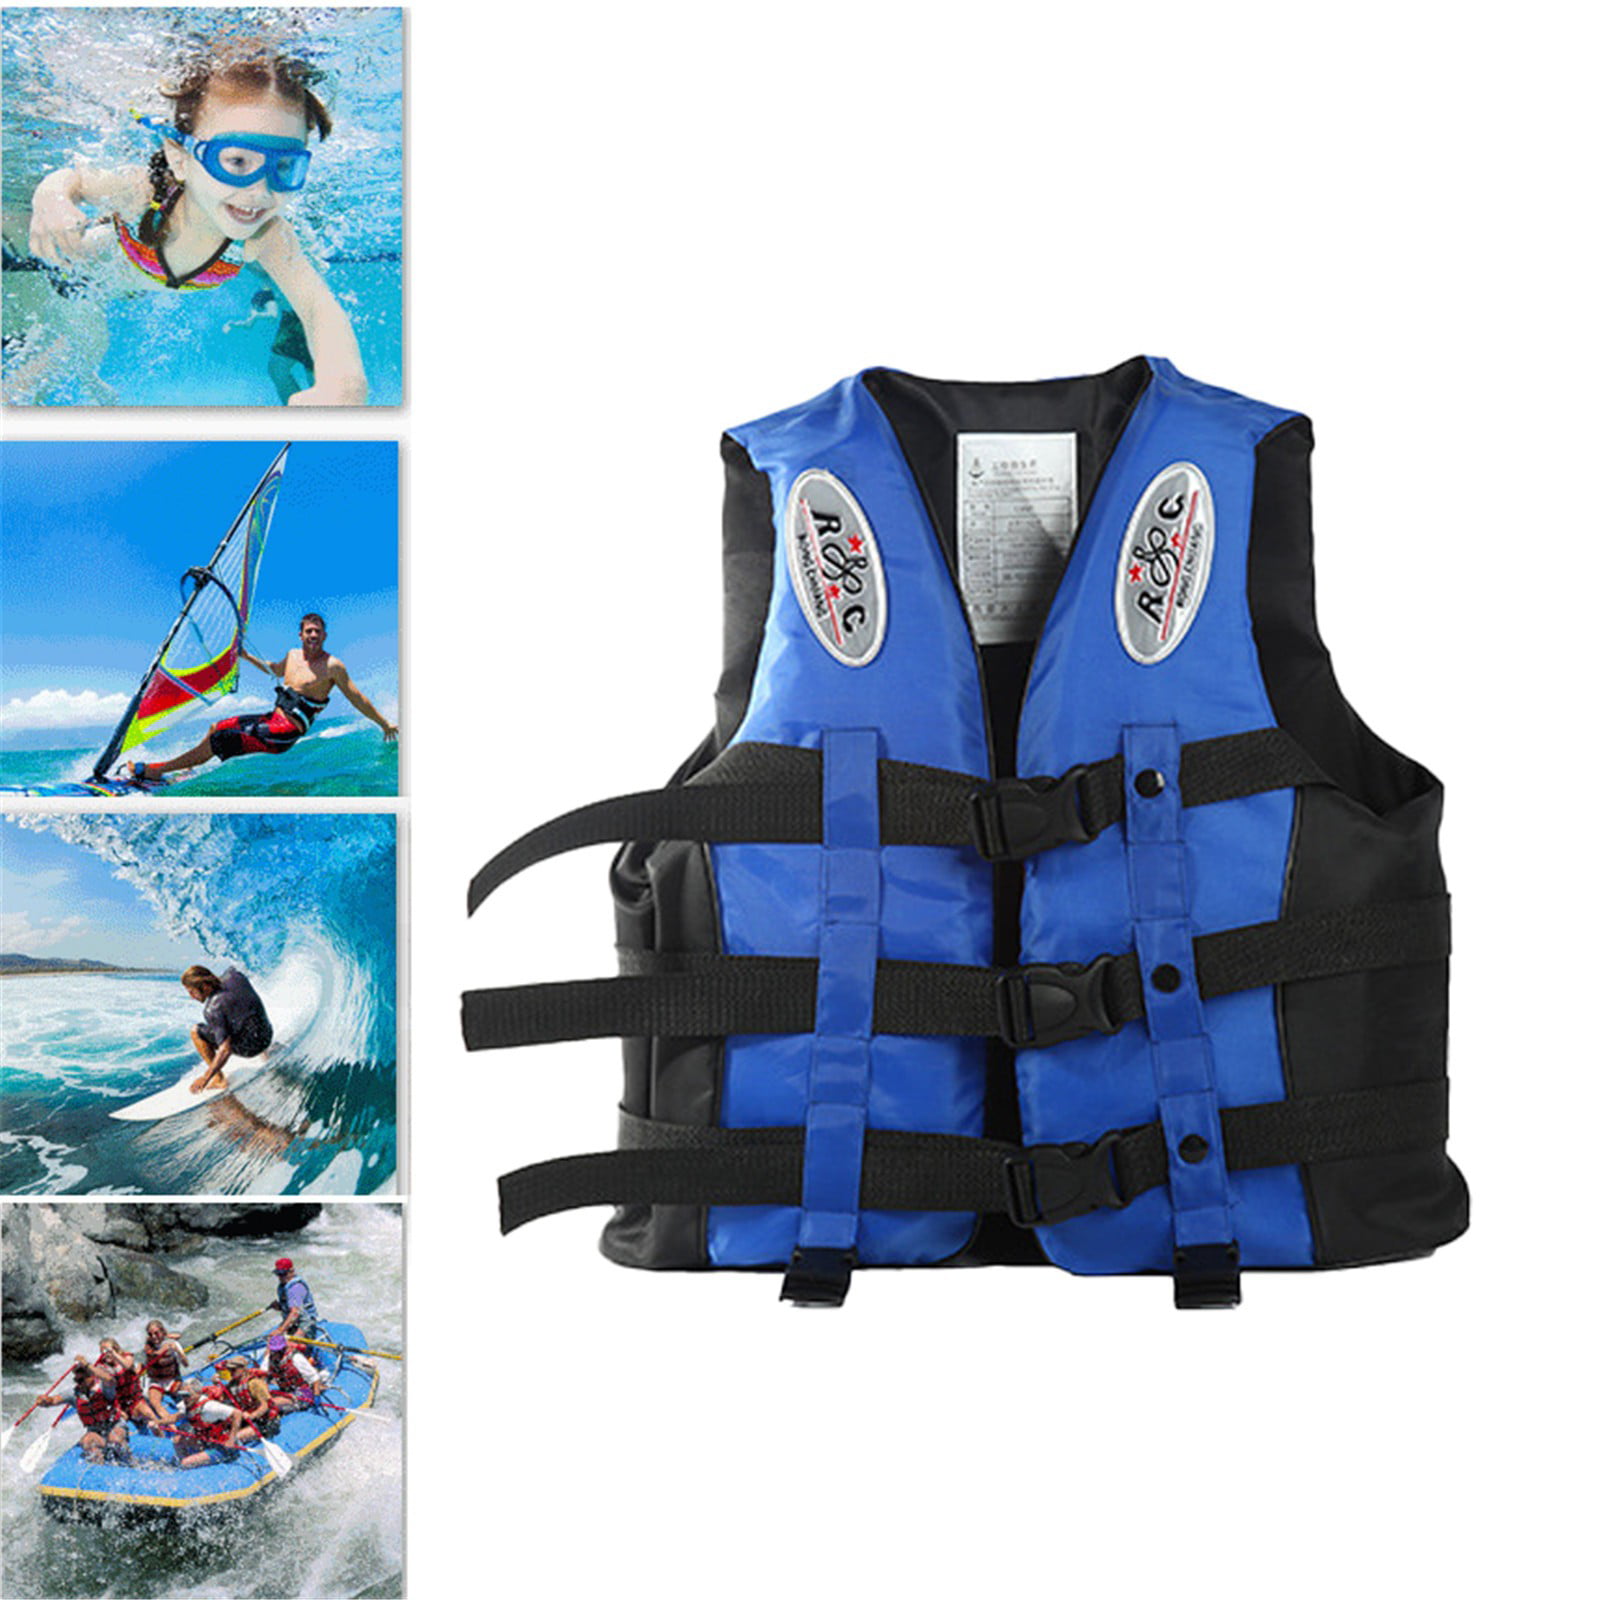 Adult Life Jacket Vest Kayak Reflective Sailing Kayak Fishing Buoyancy Ski Aid 